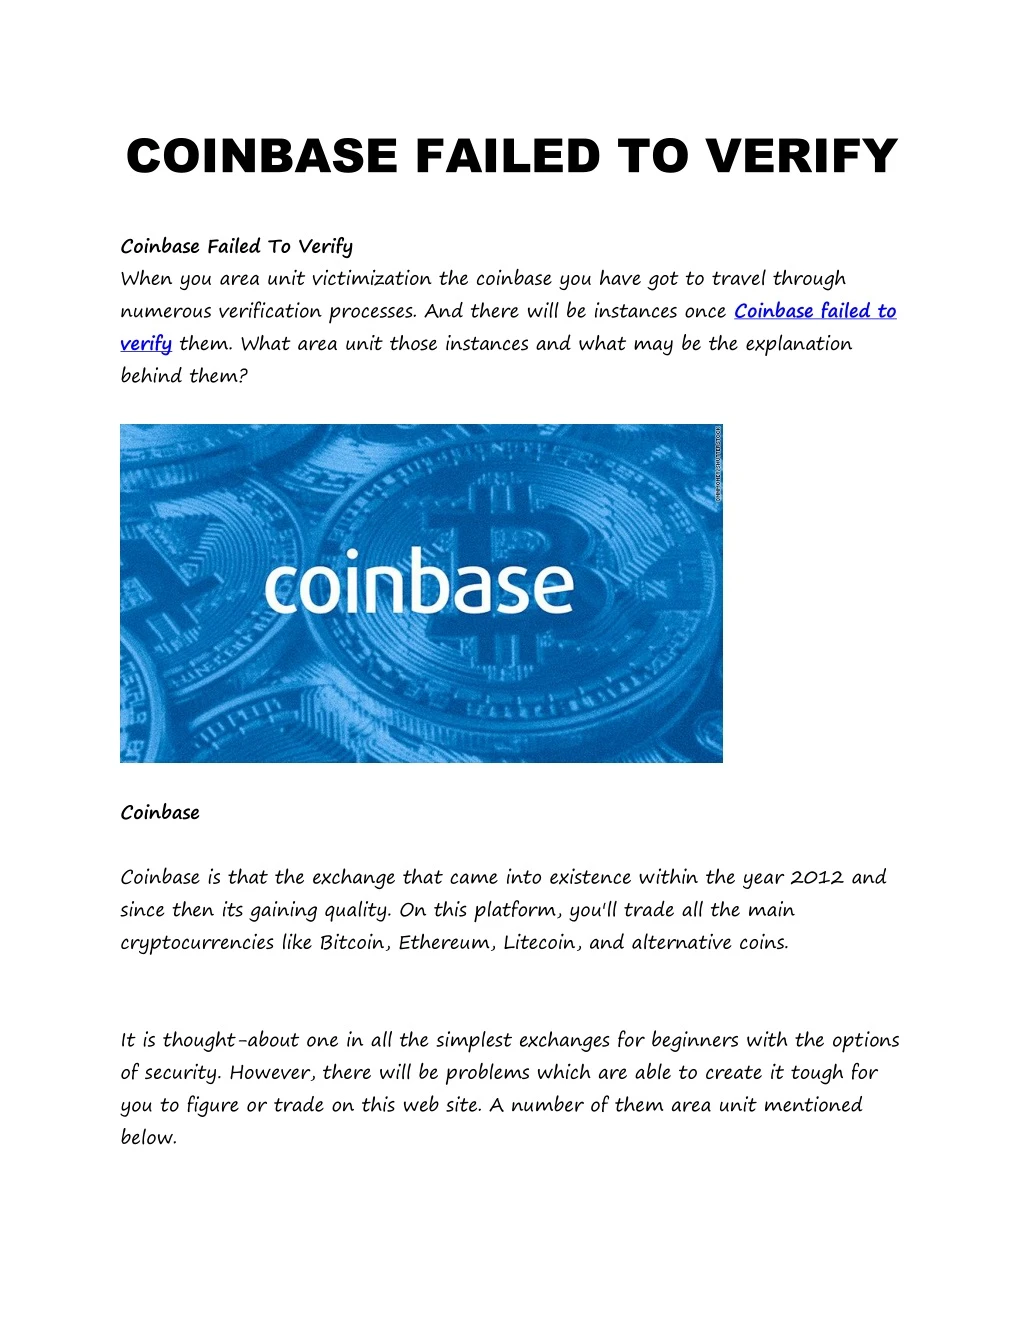 coinbase failed to verify